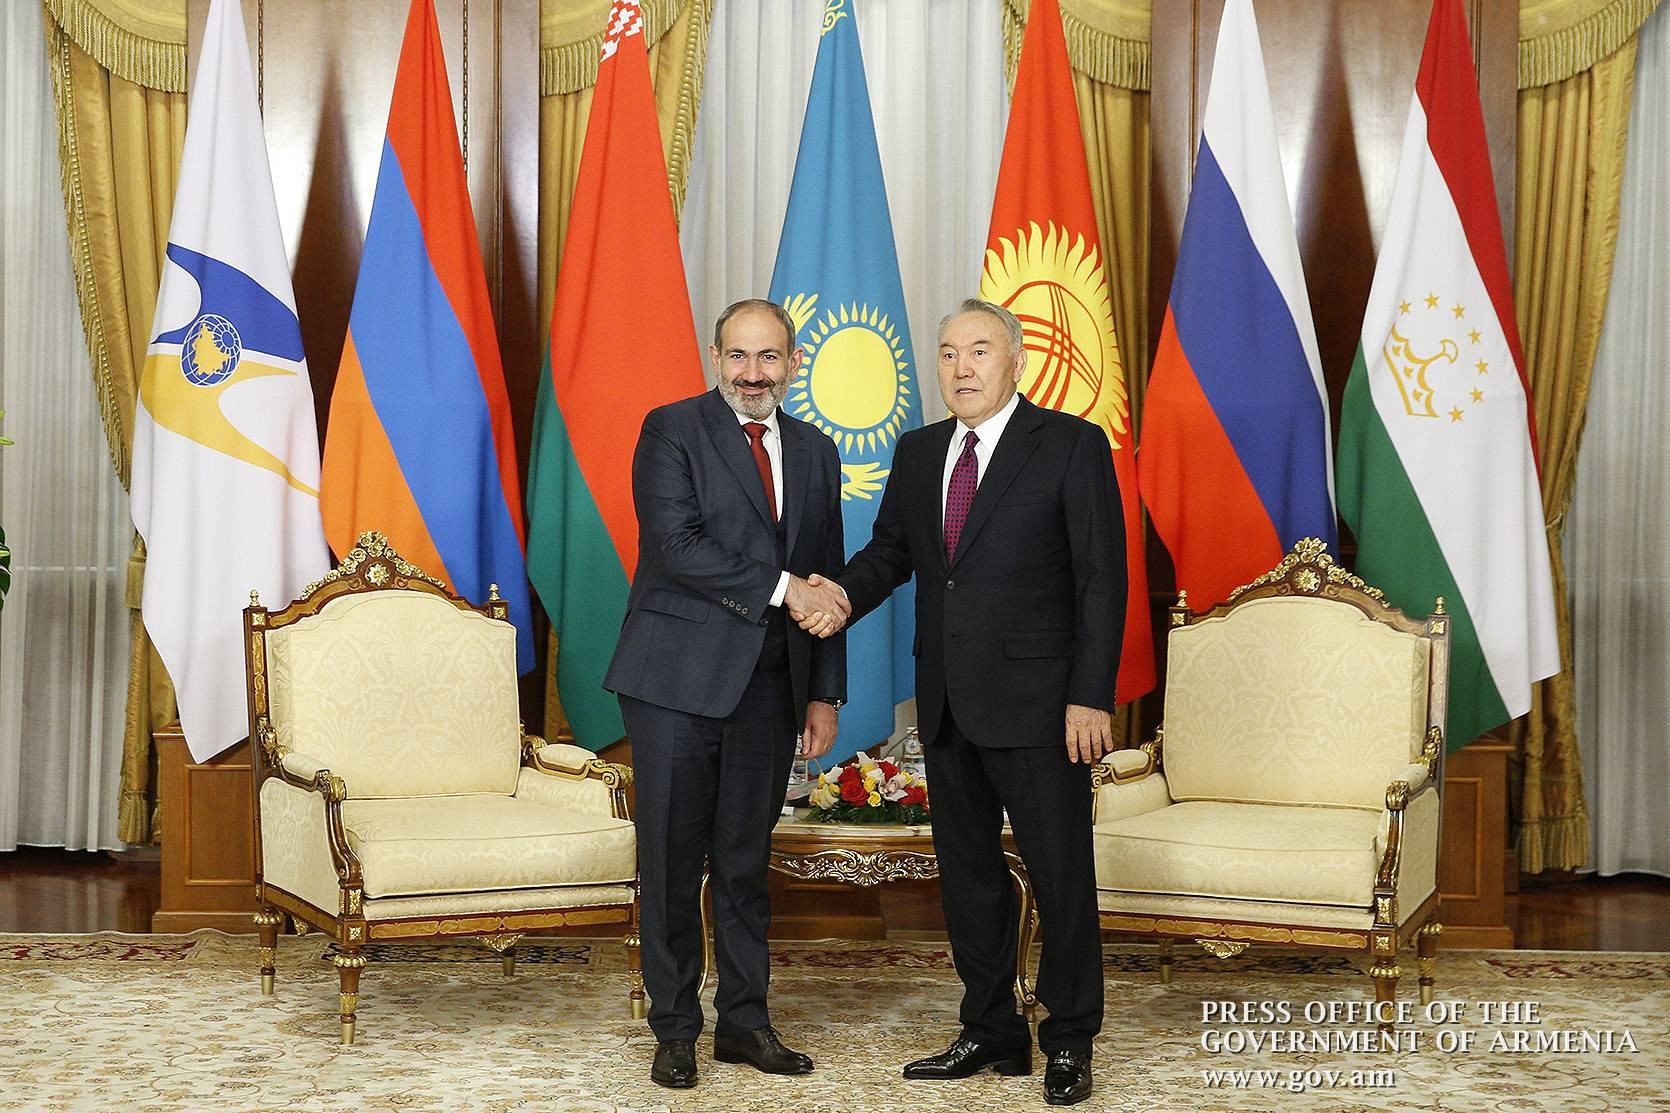 Nikol Pashinyan offers birthday greetings to Nursultan Nazarbayev